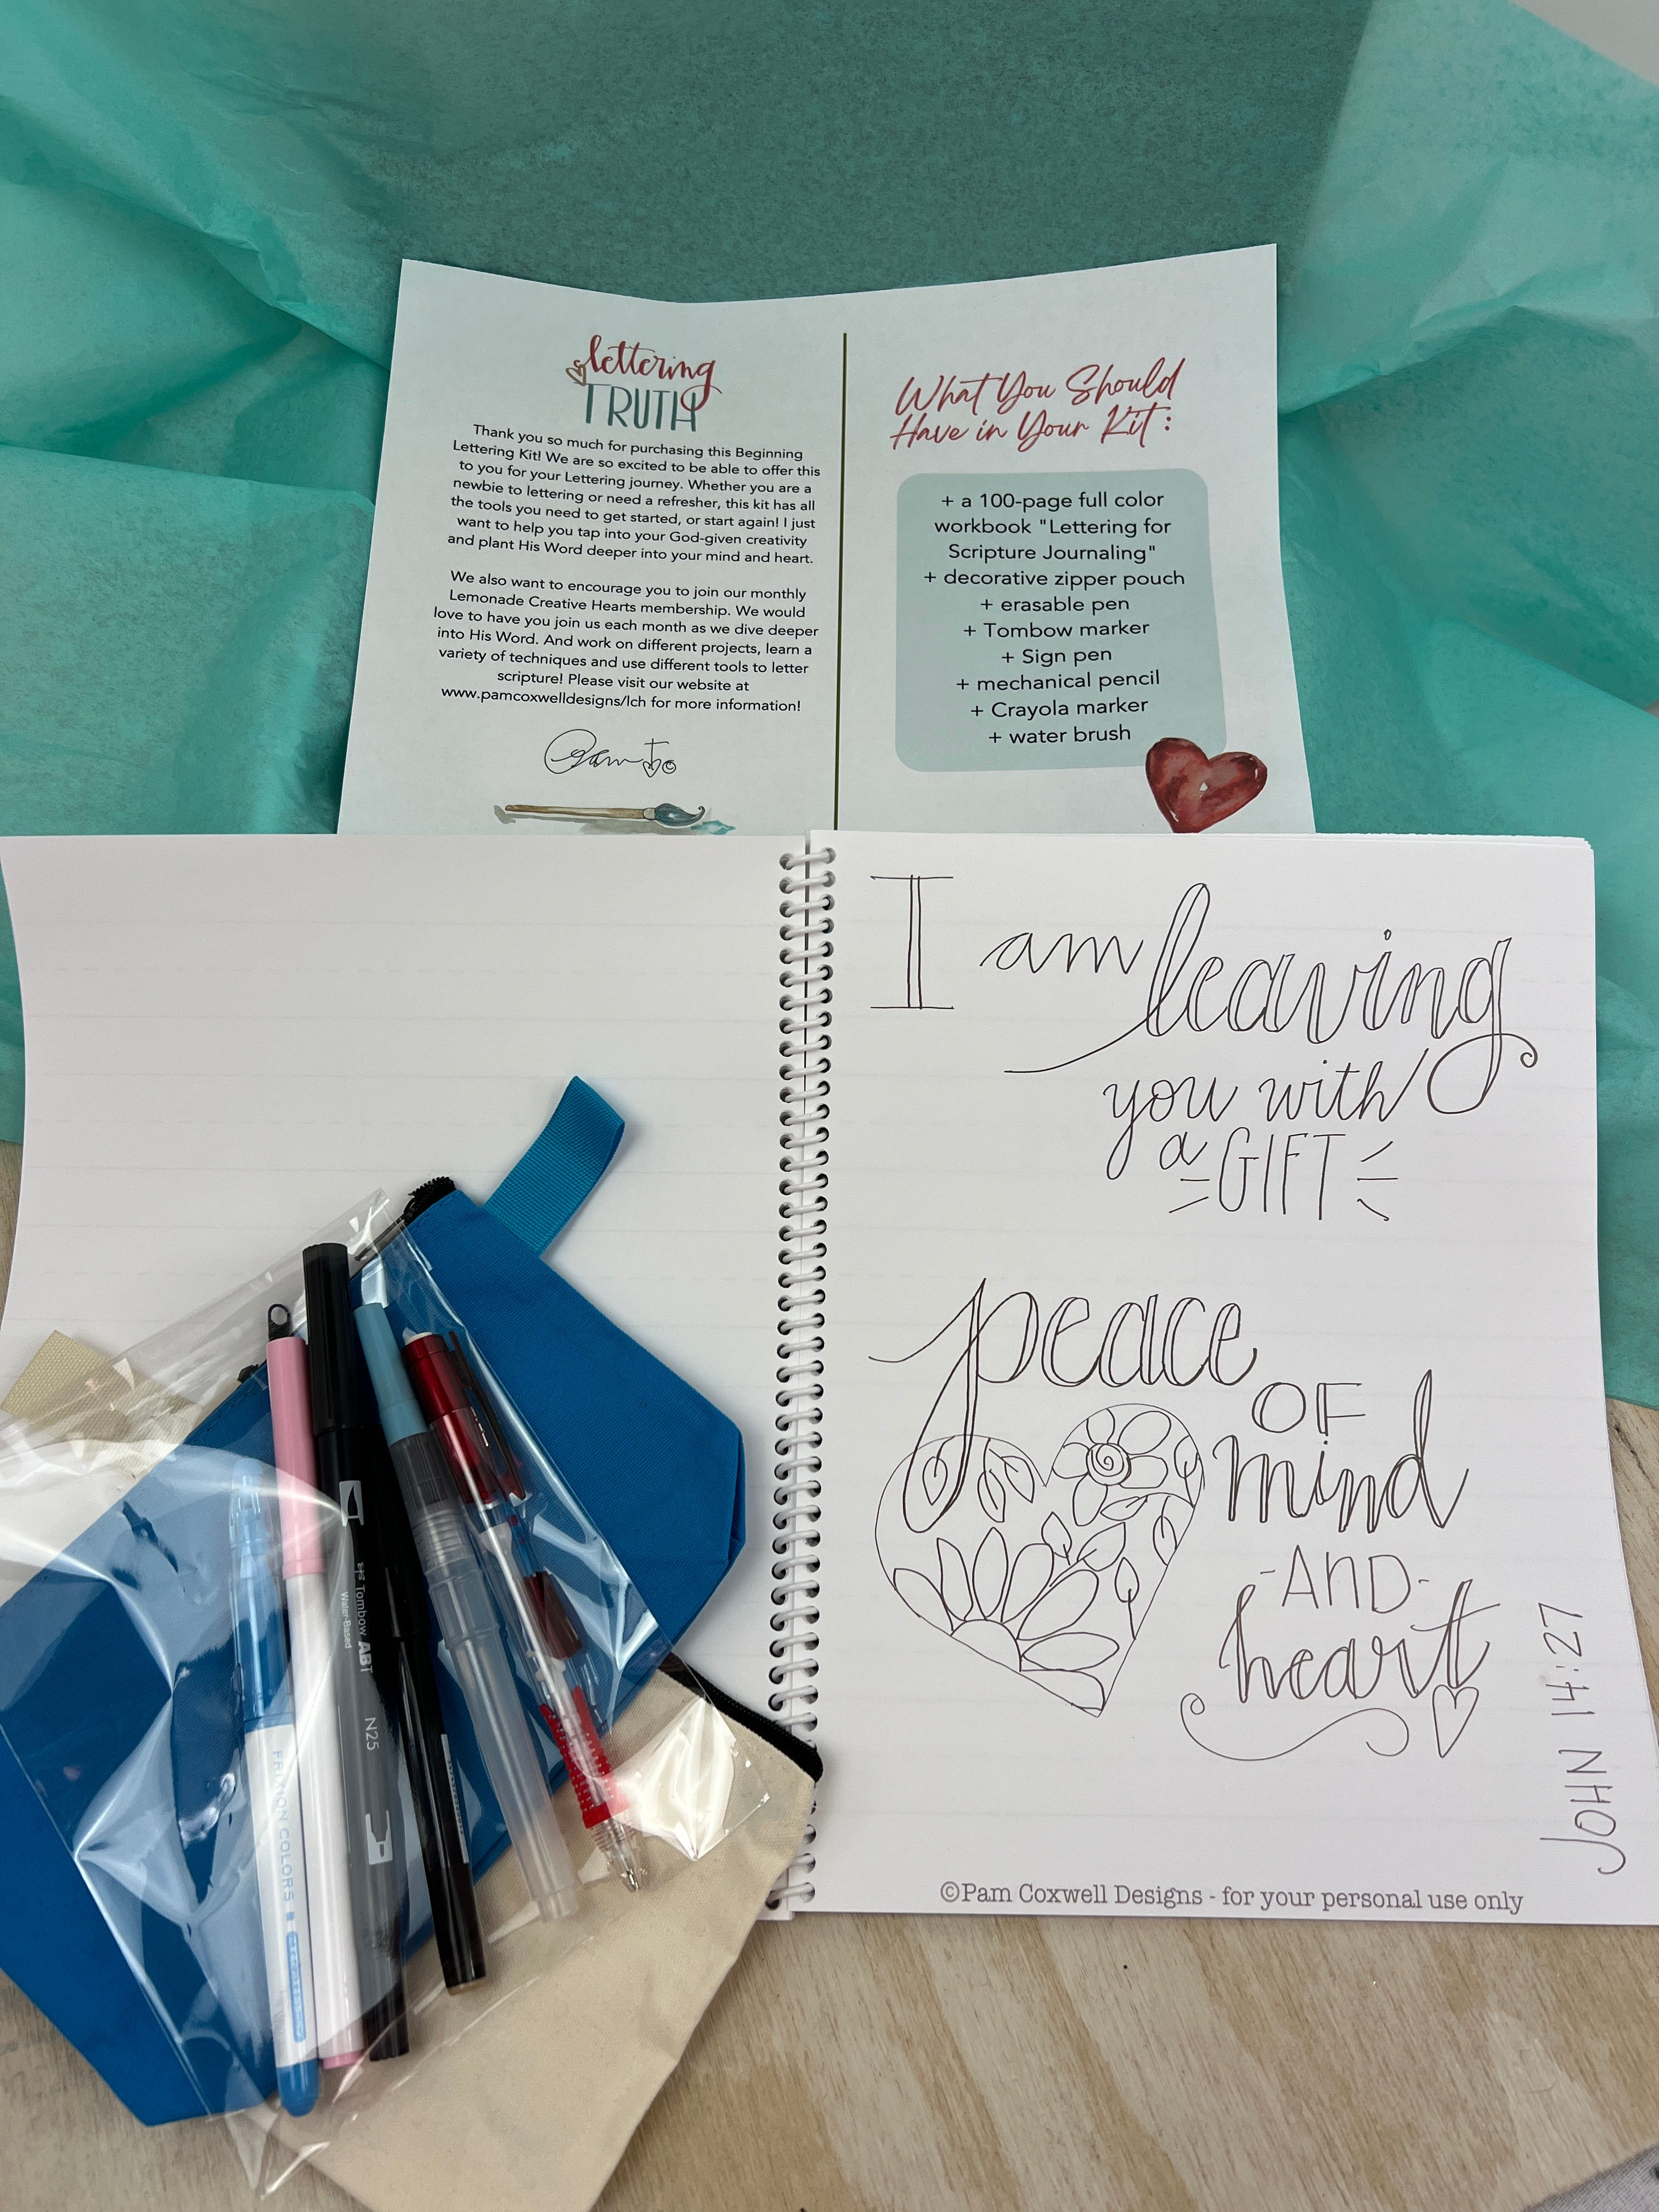 Lettering Starter Kit